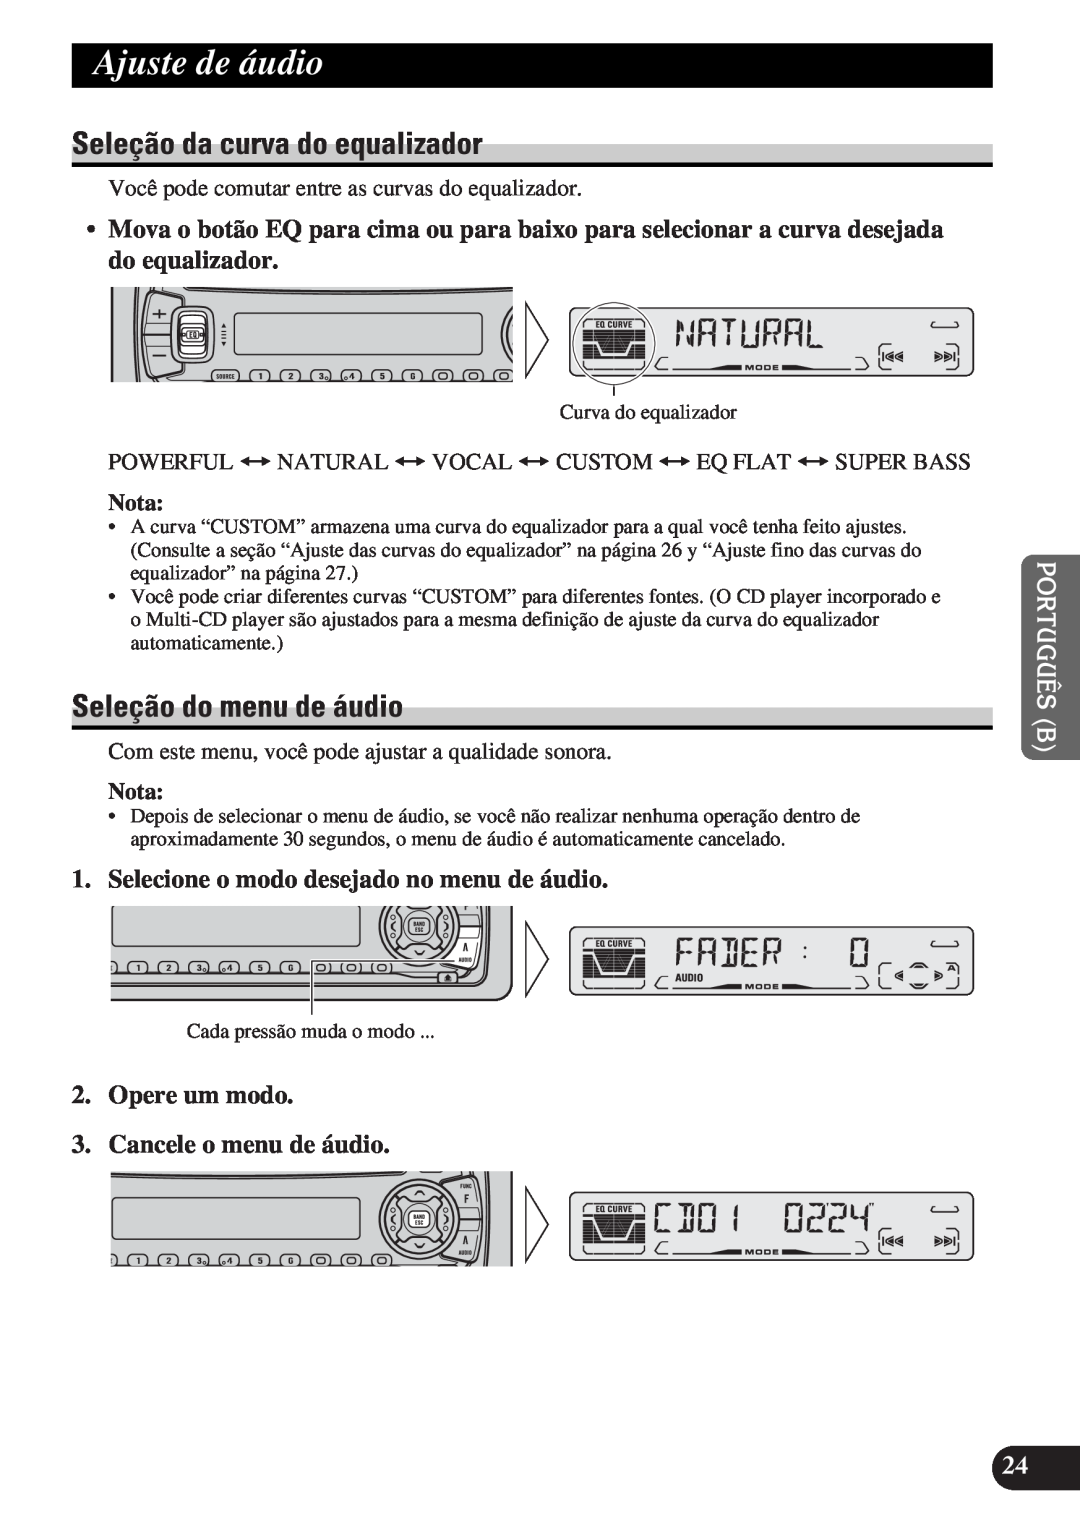 Pioneer DEH-P3150-B operation manual Ajuste de áudio, Seleção da curva do equalizador, Seleção do menu de áudio, Nota 